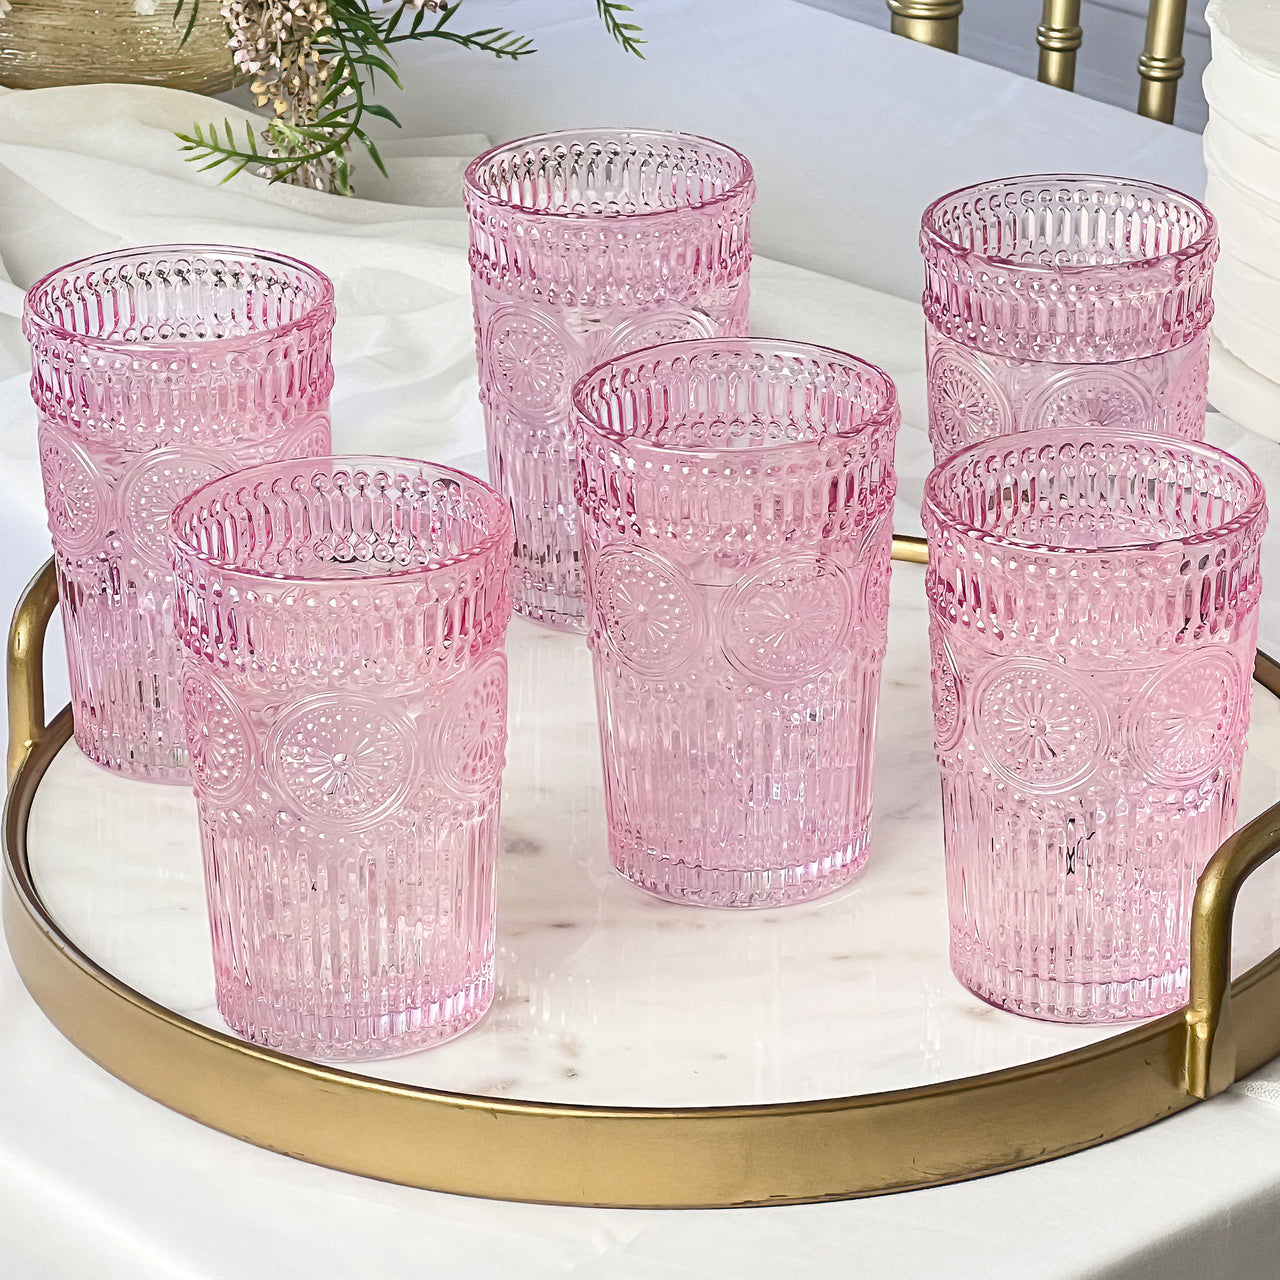 13 oz. Vintage Textured Pink Glass (Set of 6) Alternate Image 2, Kate Aspen | Drinking Glasses